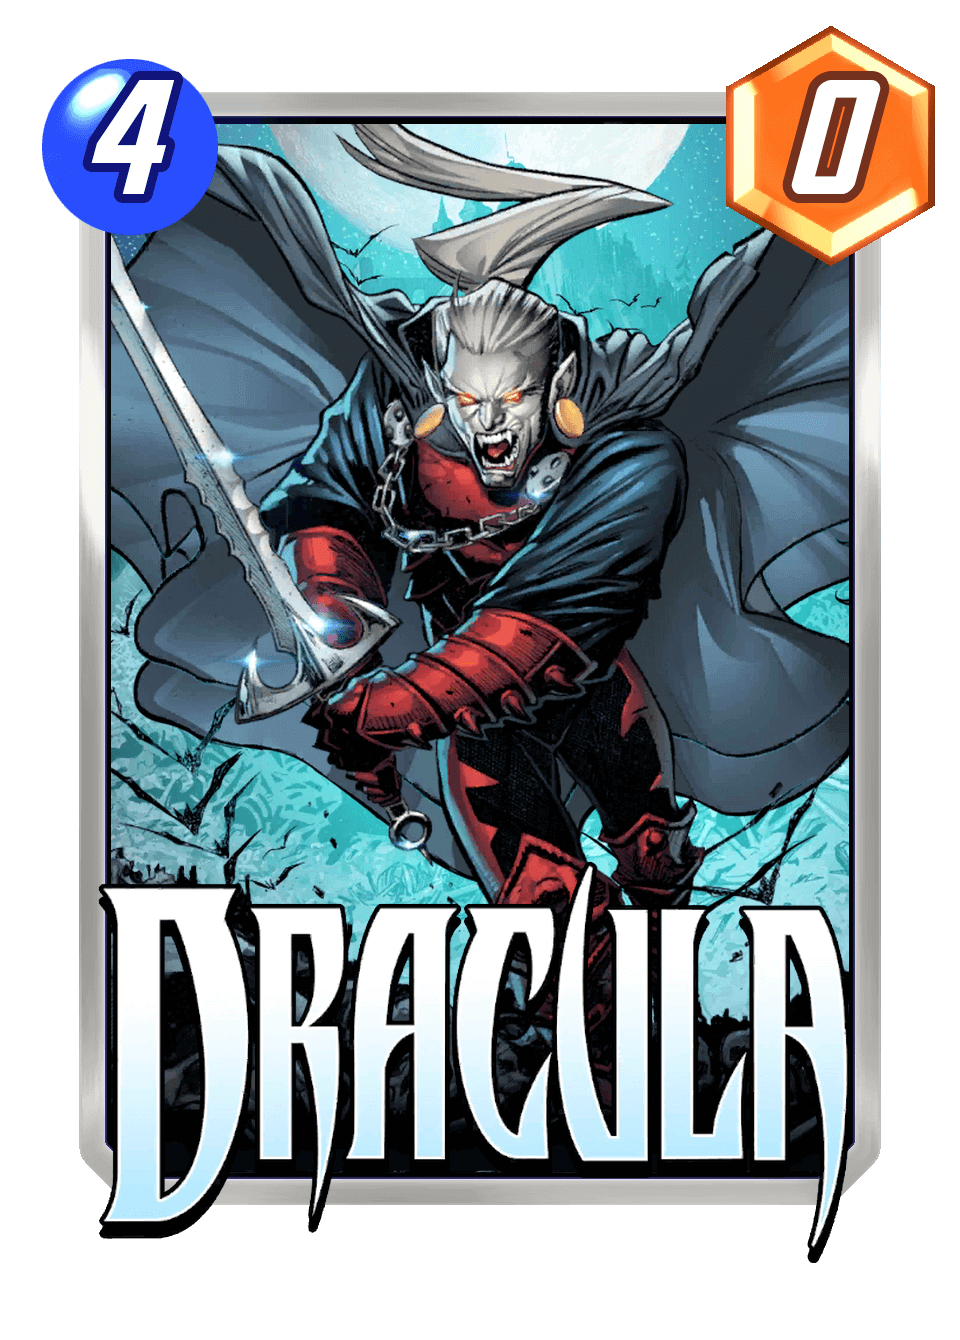 Deck of the Week #1: Gator's Dracula/Infinaut Deck!